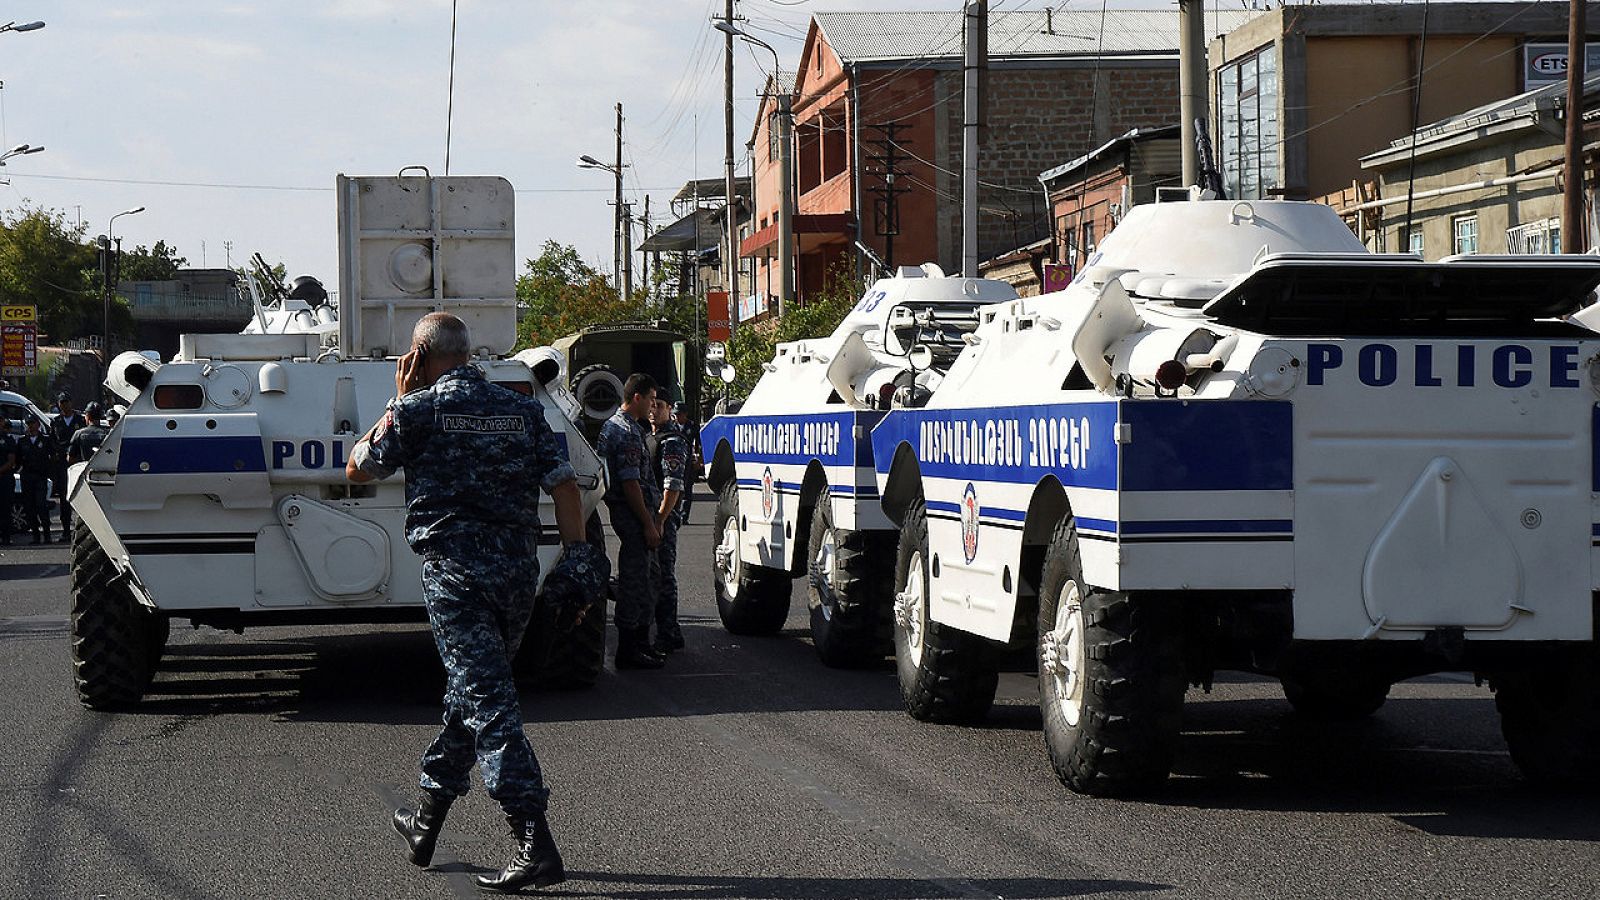 Un cordón policial y tanquetas rodean el edificio de la Policía que ha sido tomado por un grupo armado, en Ereván, capital de Armenia, el 17 de julio de 2016. REUTERS/Melik Baghdasaryan/Photolure